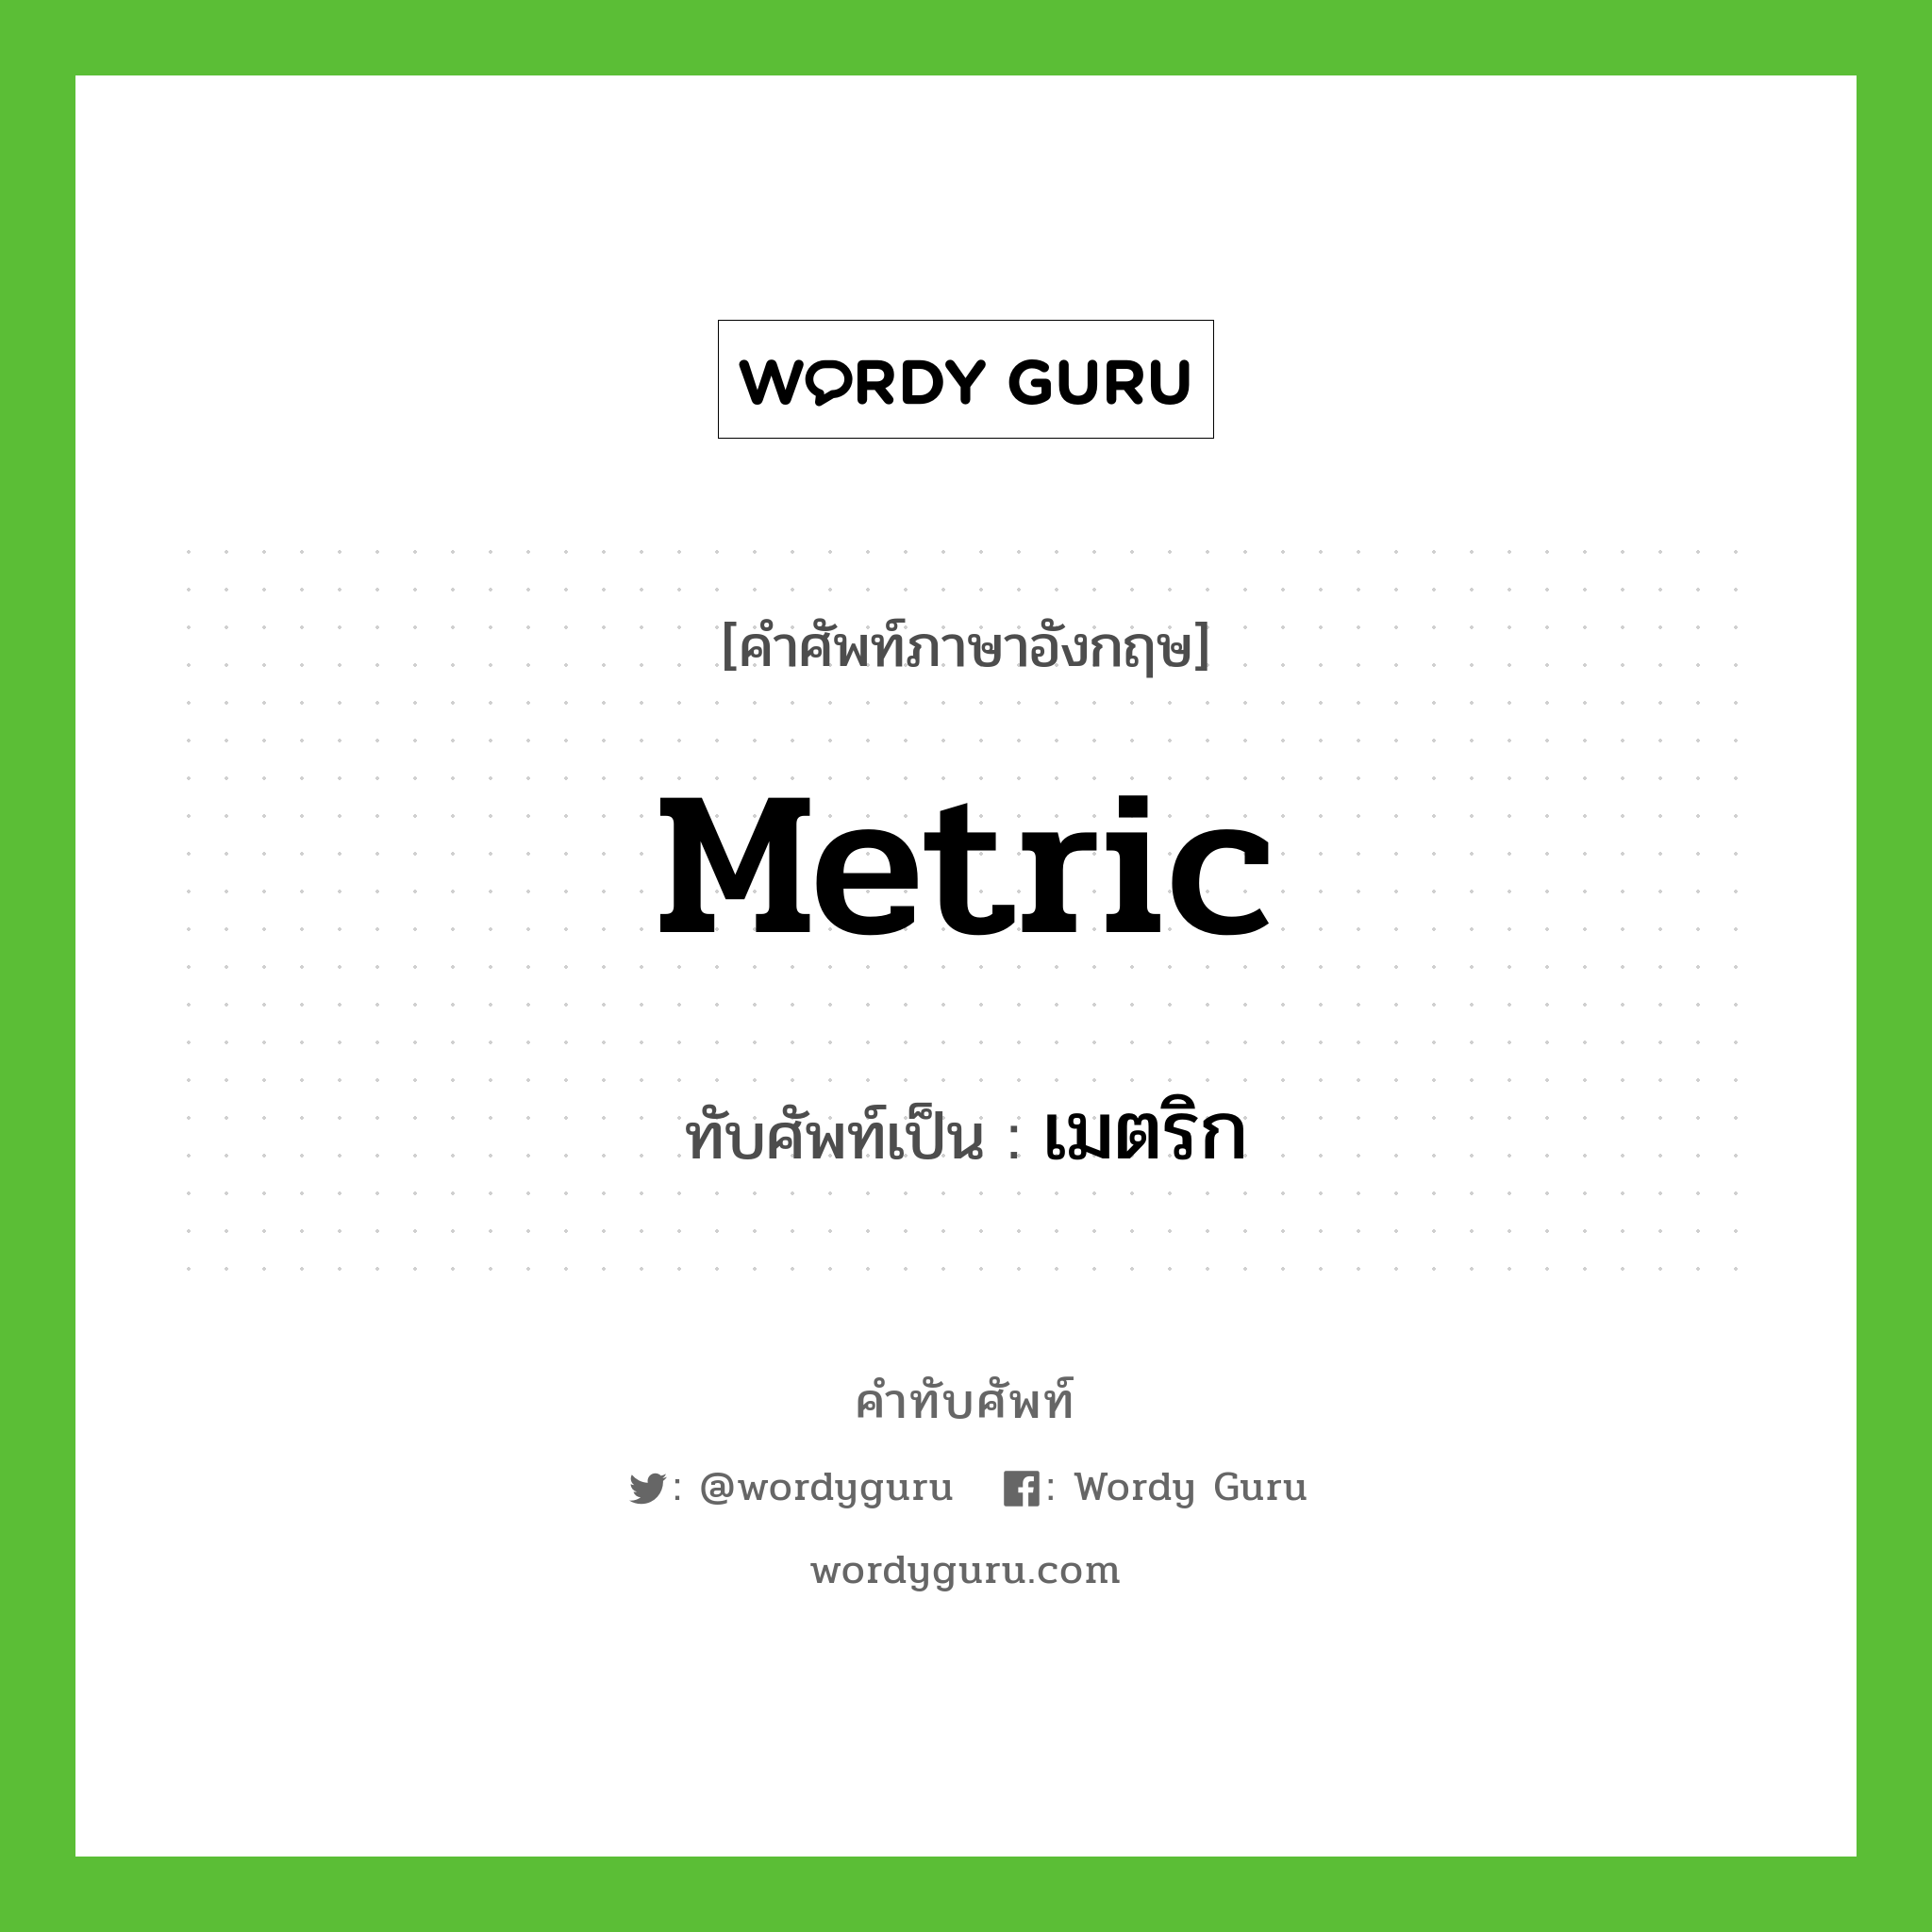 metric เขียนเป็นคำไทยว่าอะไร?, คำศัพท์ภาษาอังกฤษ metric ทับศัพท์เป็น เมตริก